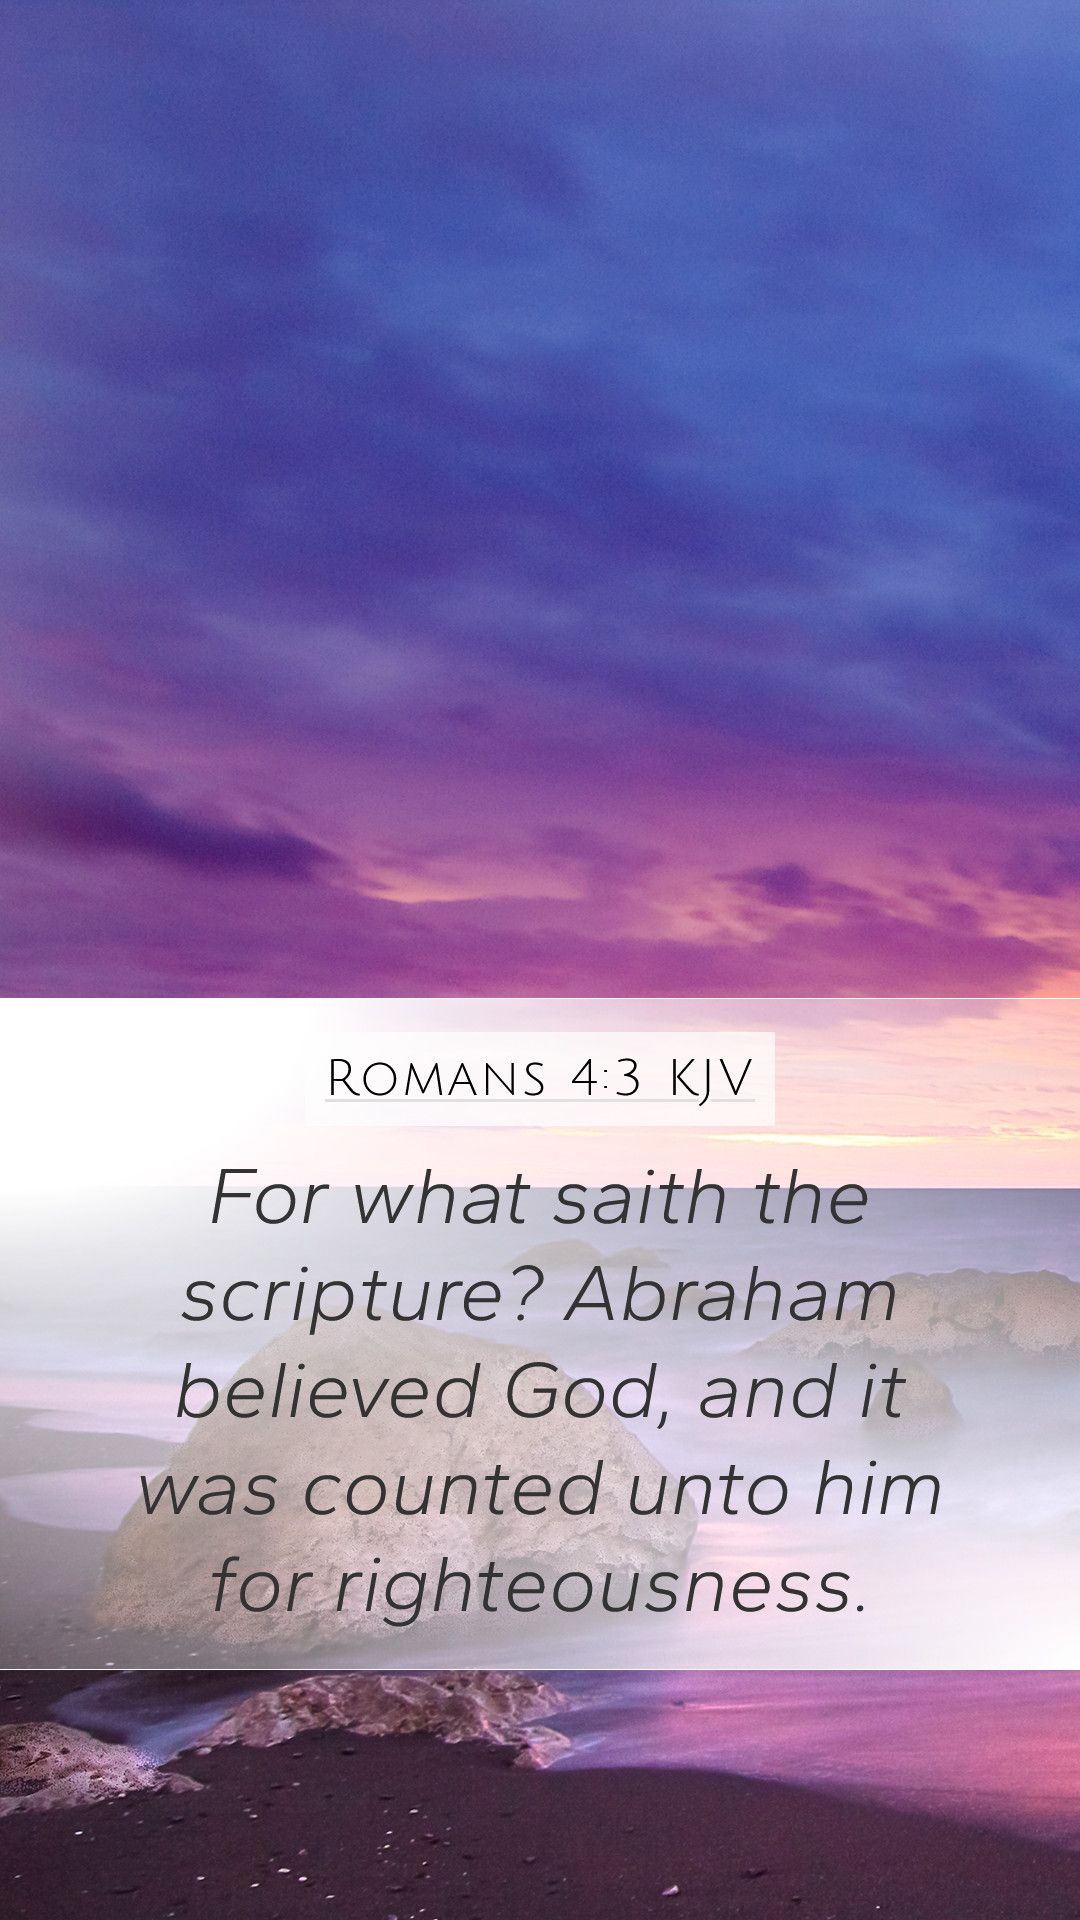 Romans 4:3 KJV Mobile Phone Wallpaper what saith the scripture? Abraham believed